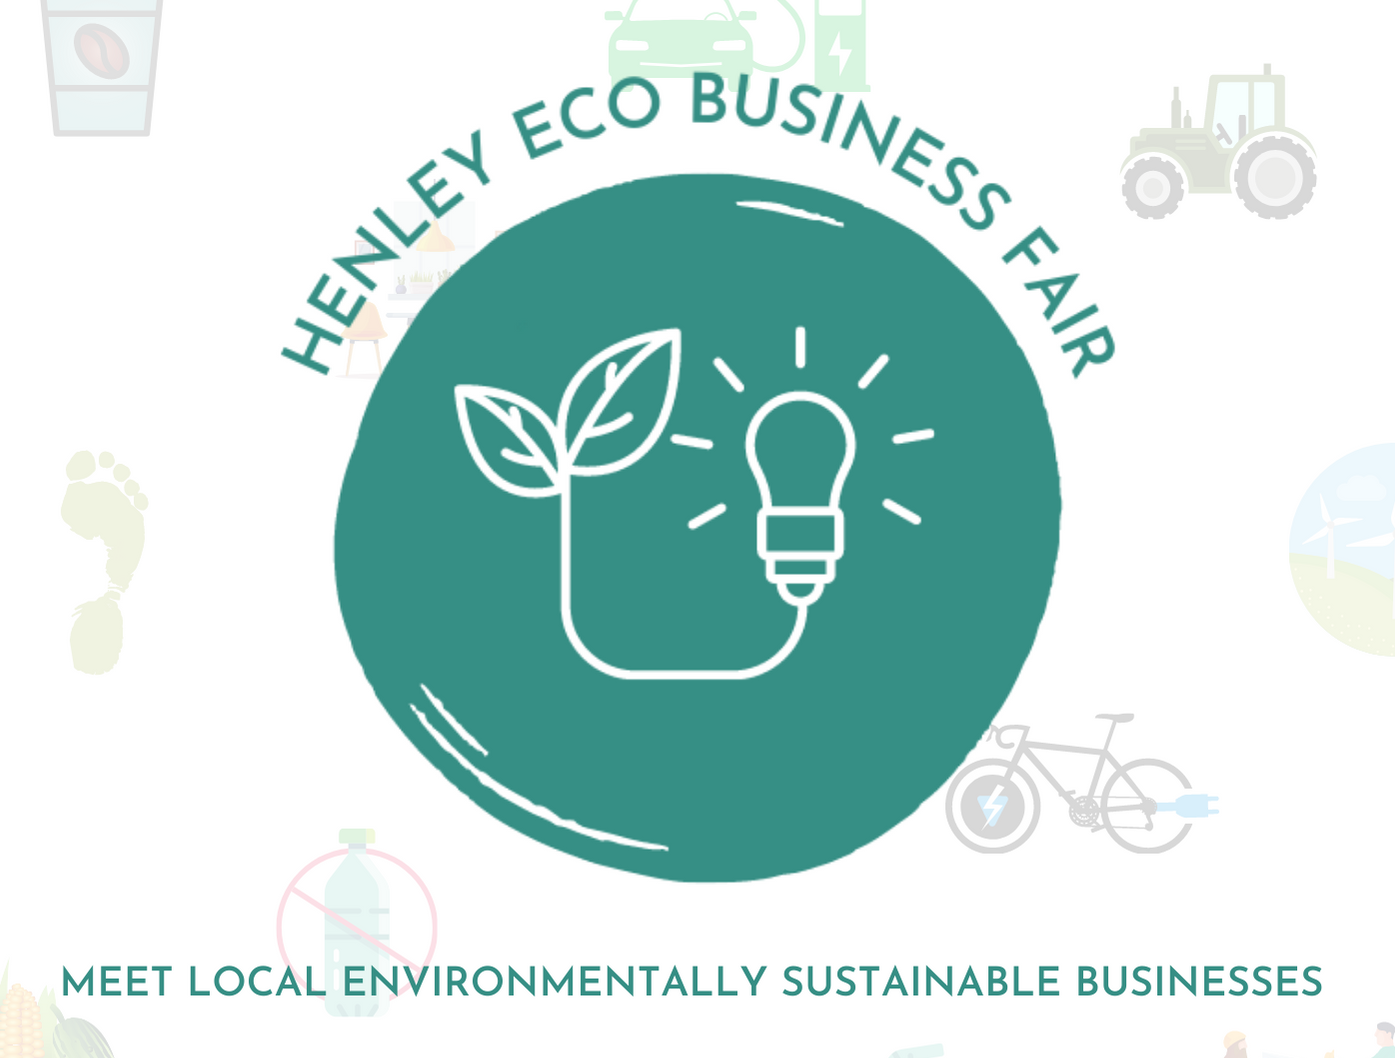 henley eco business fair